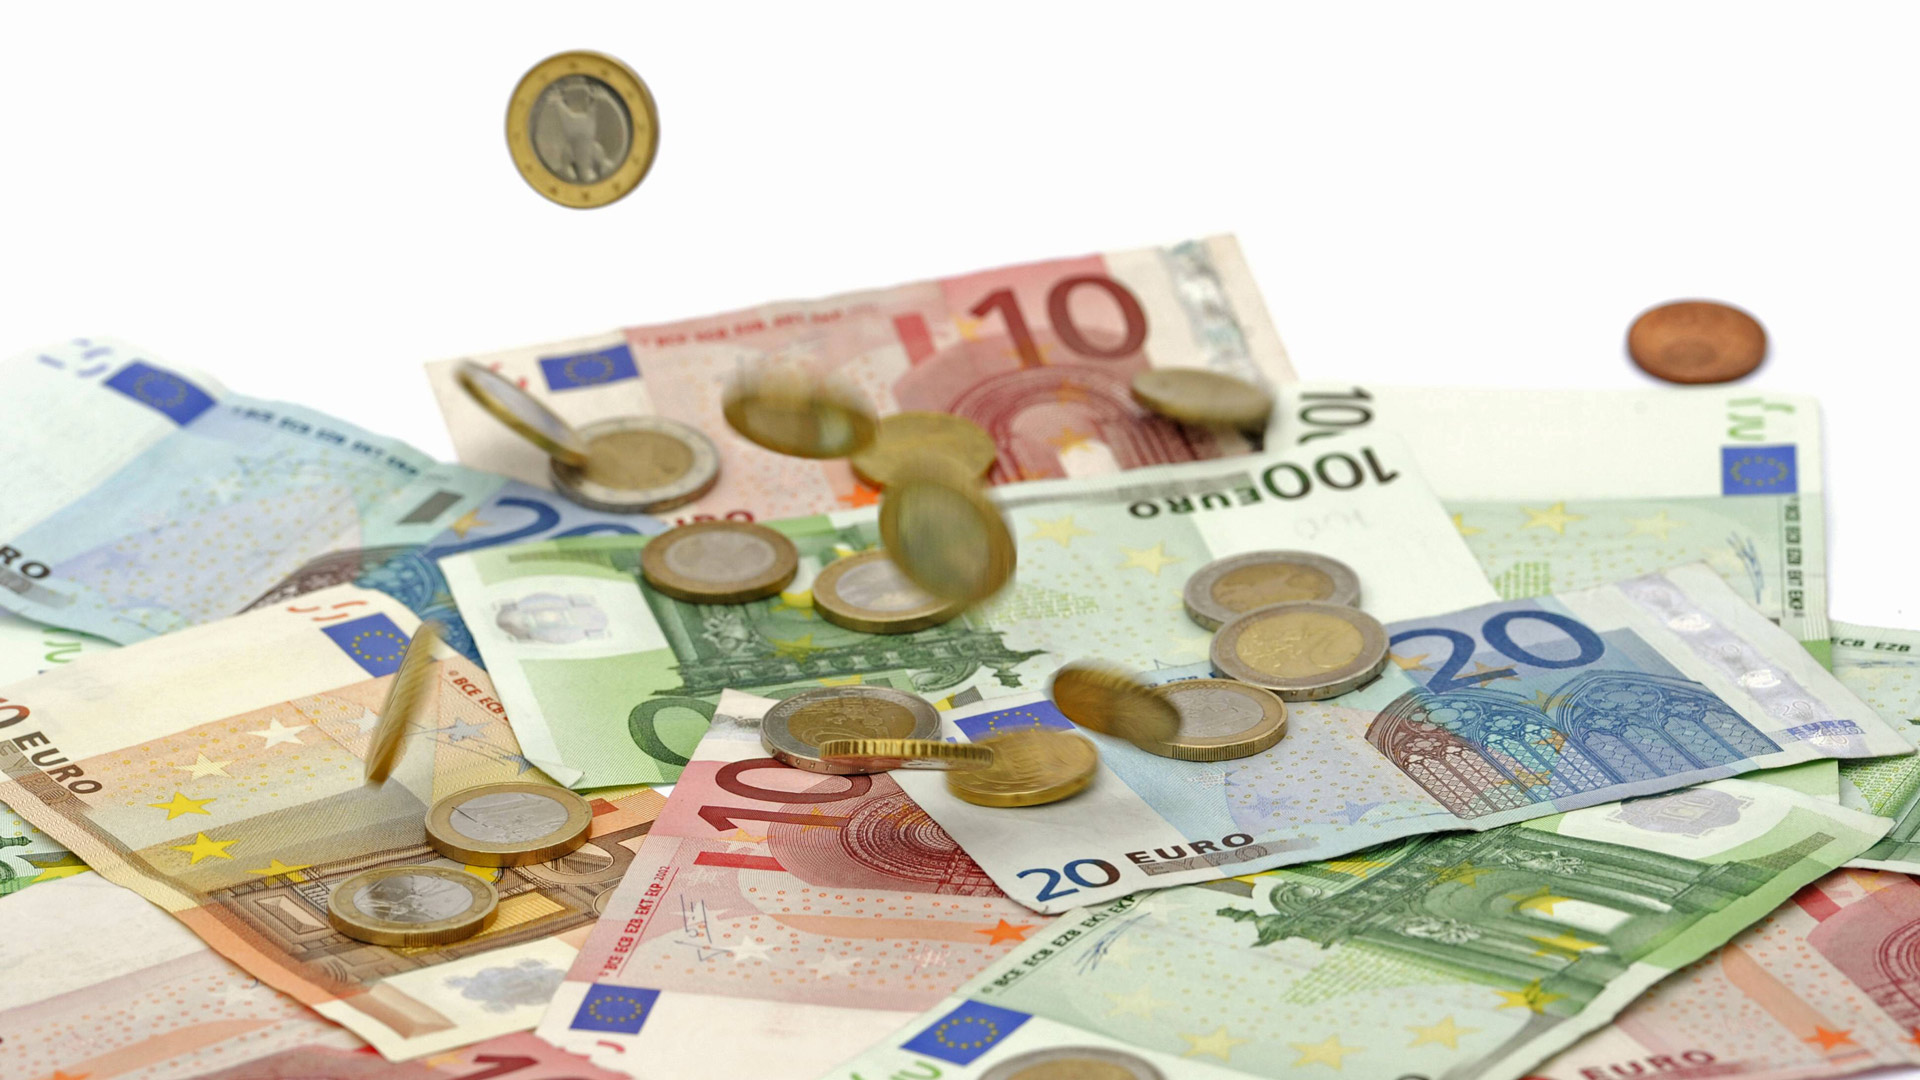 Euromünzen fallen auf Euroscheine